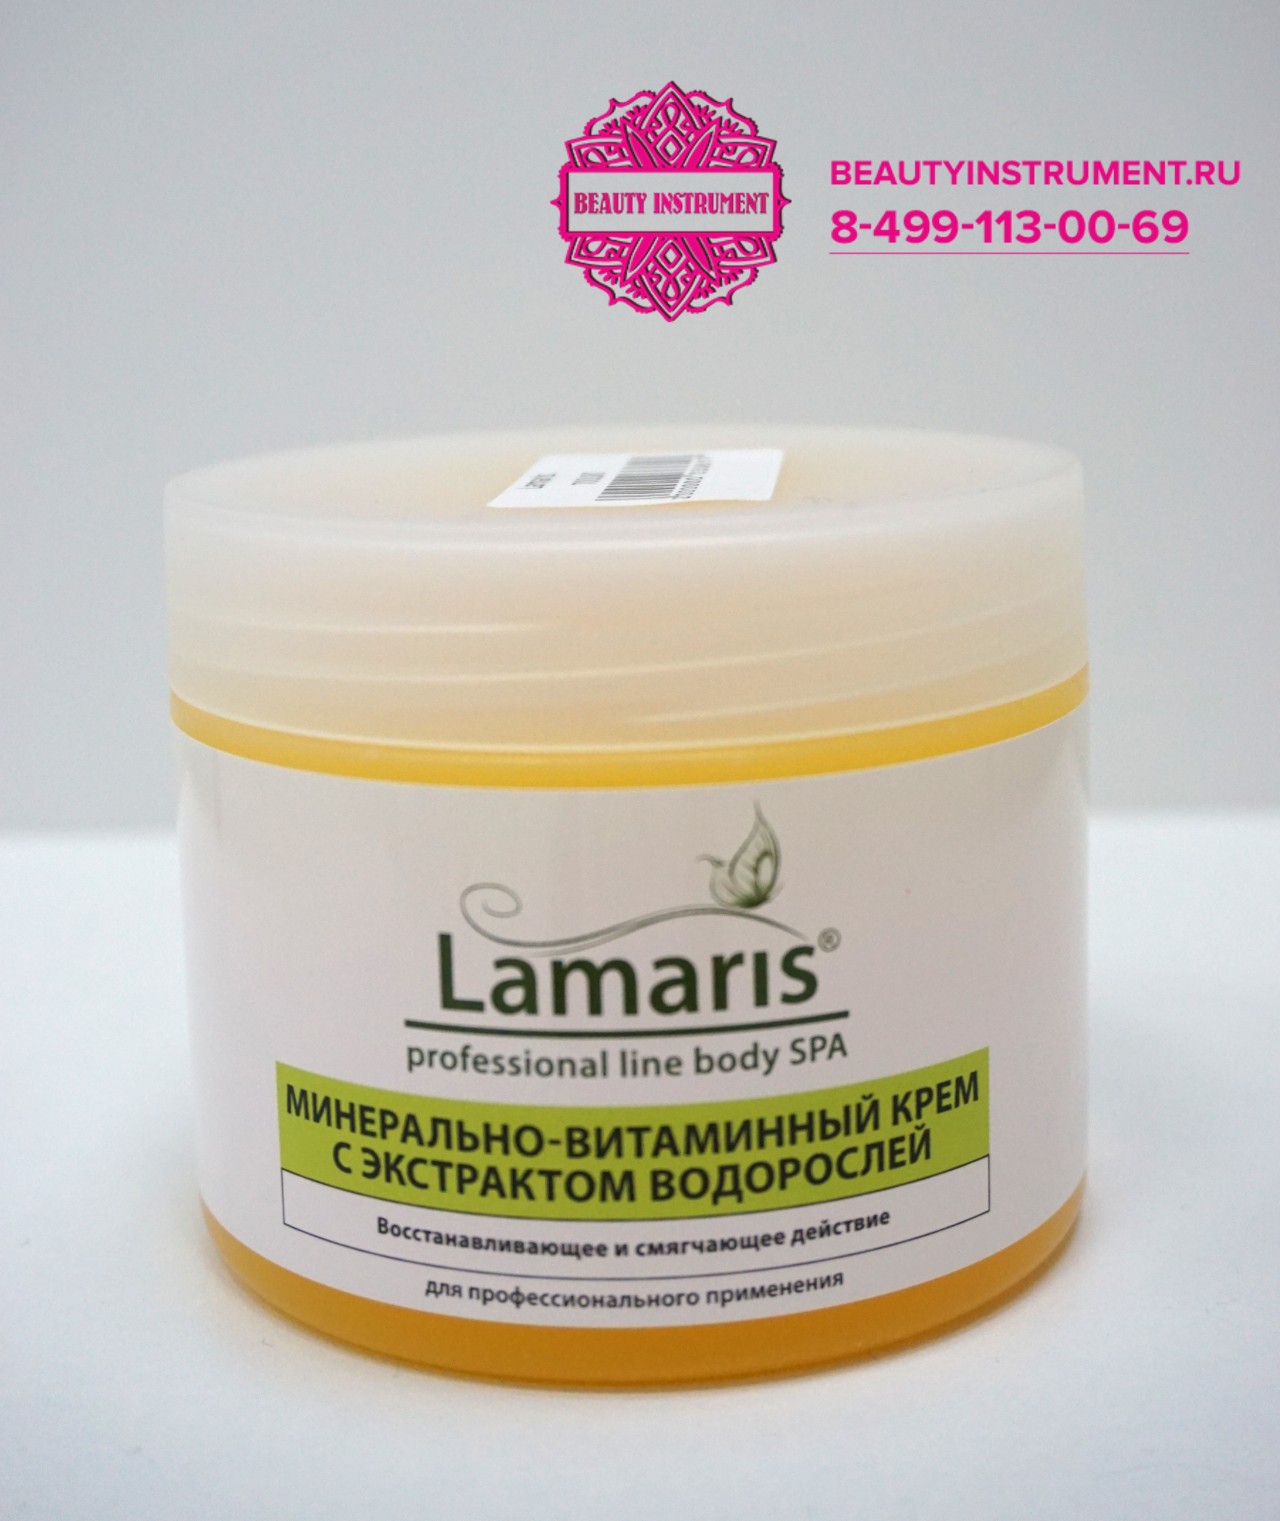 Lamaris, Минерально-витаминный крем с экстрактом водорослей, 300мл